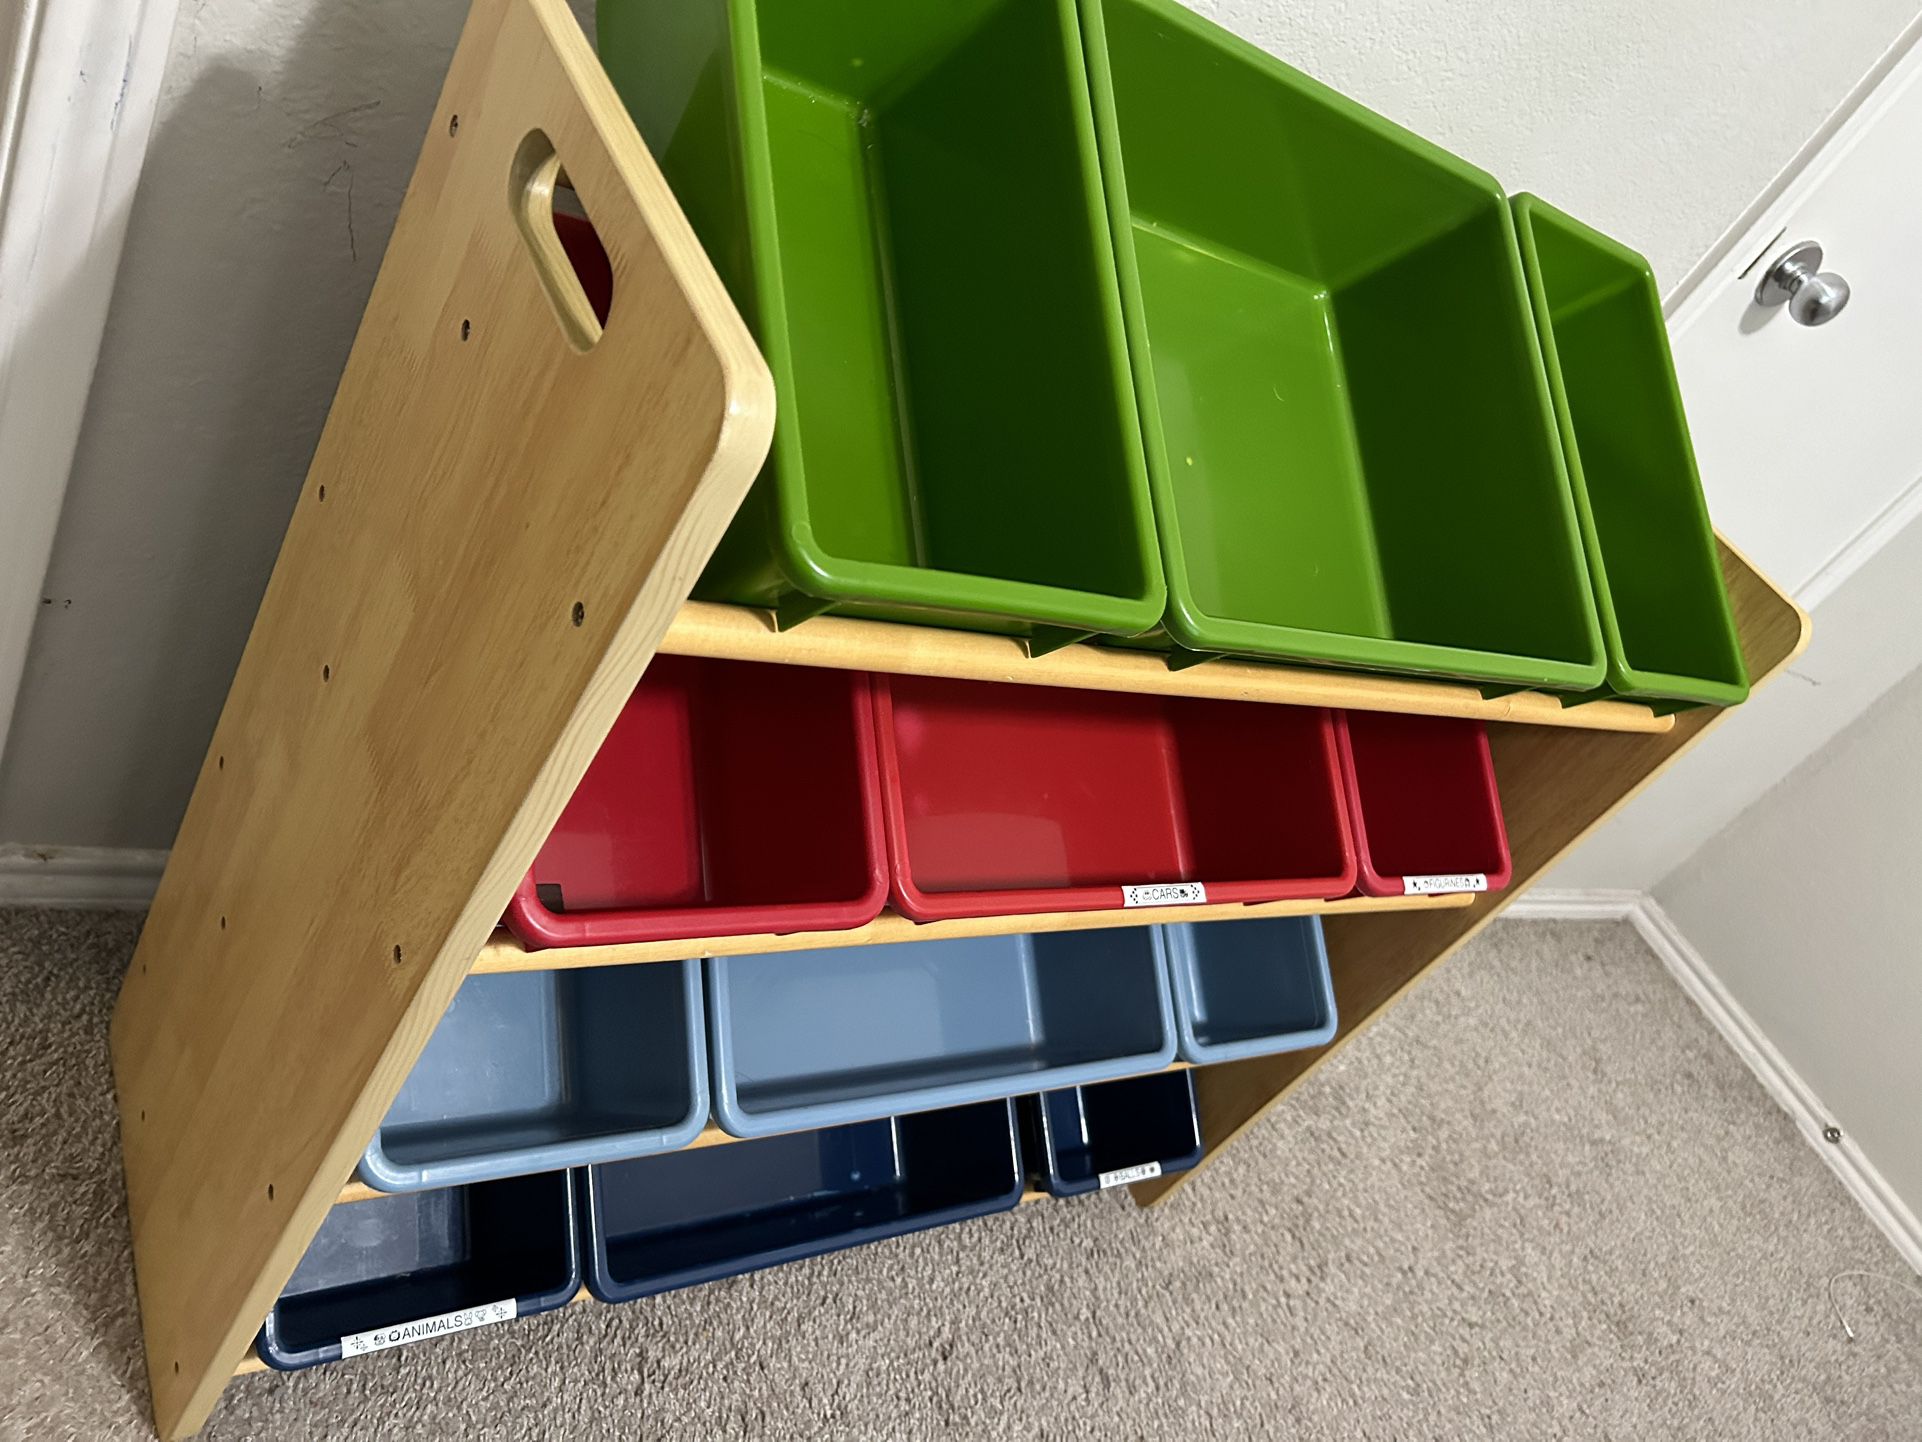 Toy Organizer With Storage Bins